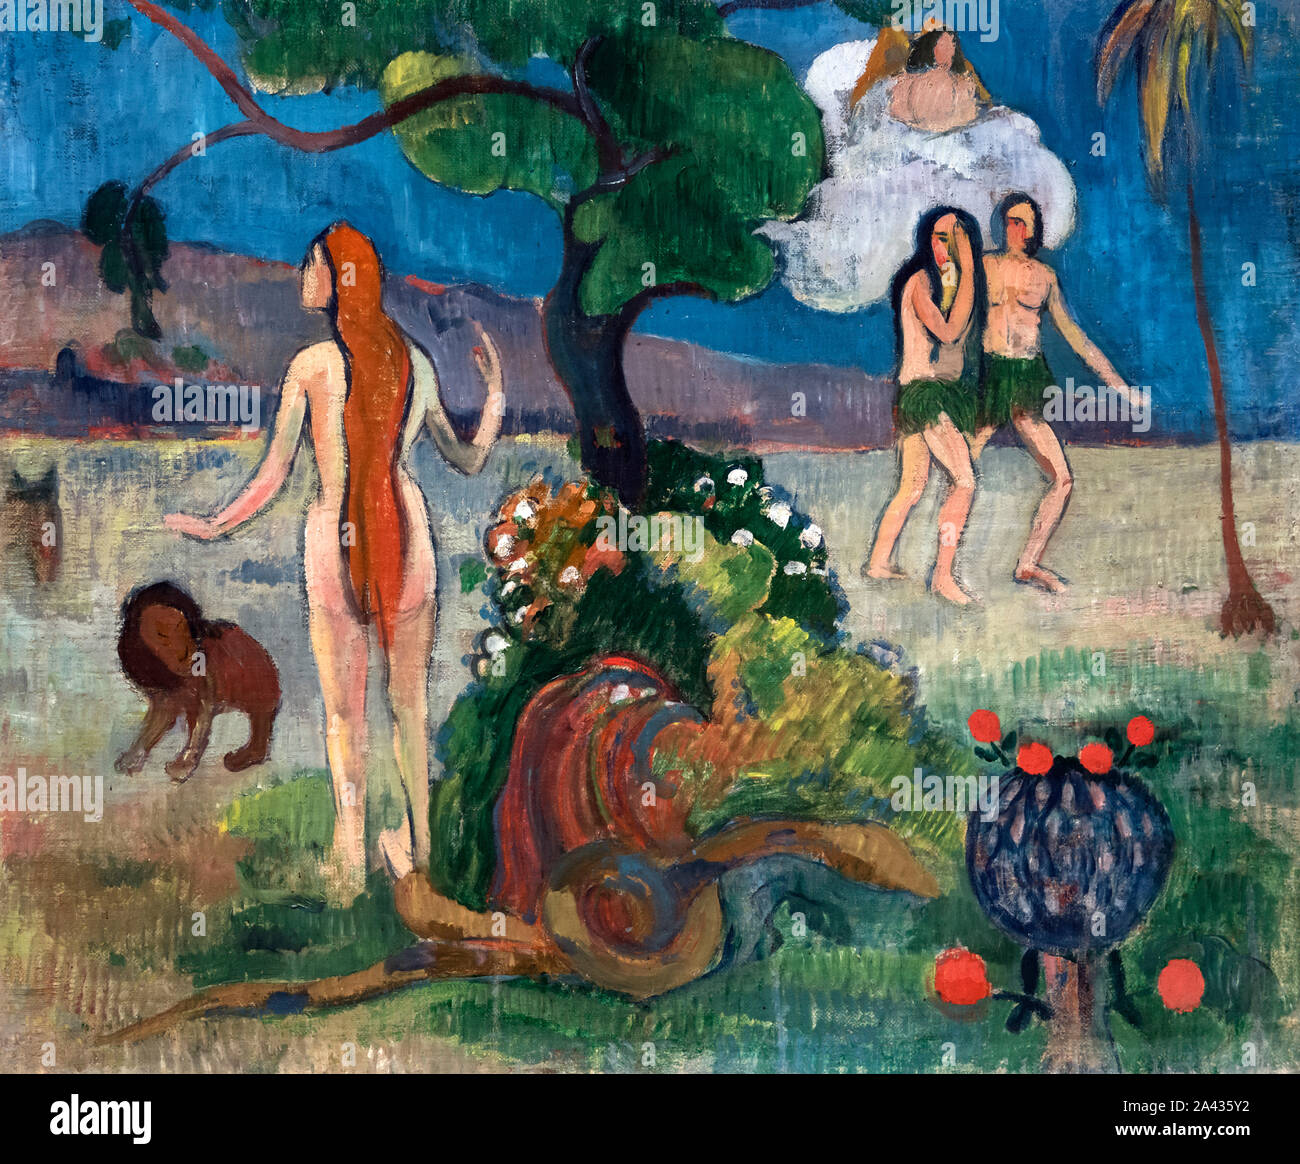 Paradis perdu de Paul Gauguin (1848-1903), huile sur toile, 1890 Banque D'Images